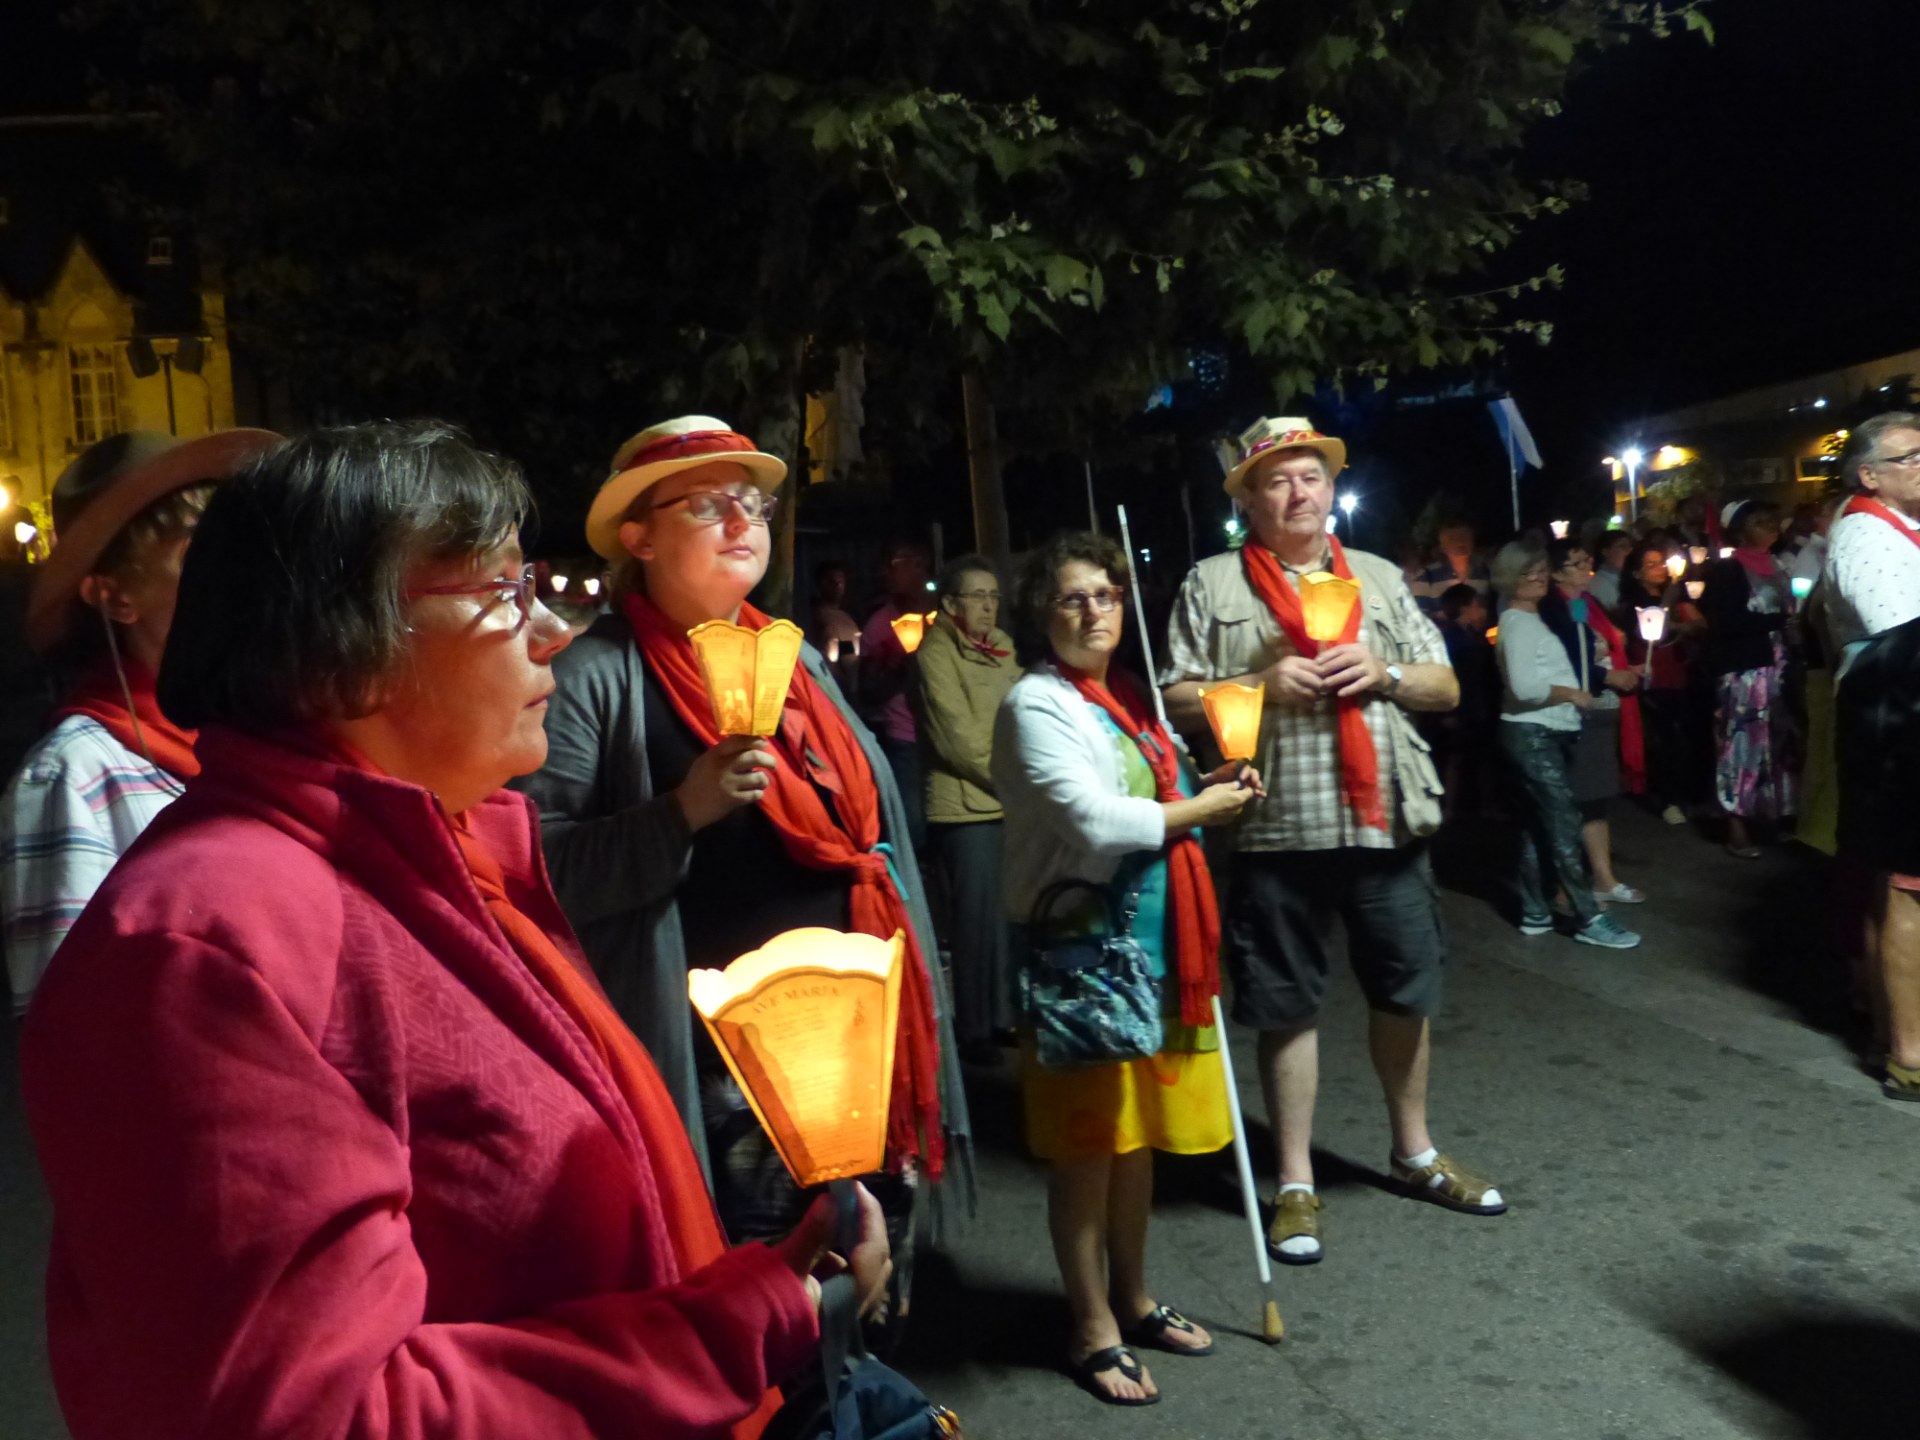 Lourdes2018-photos procession flambeaux 2 (12)